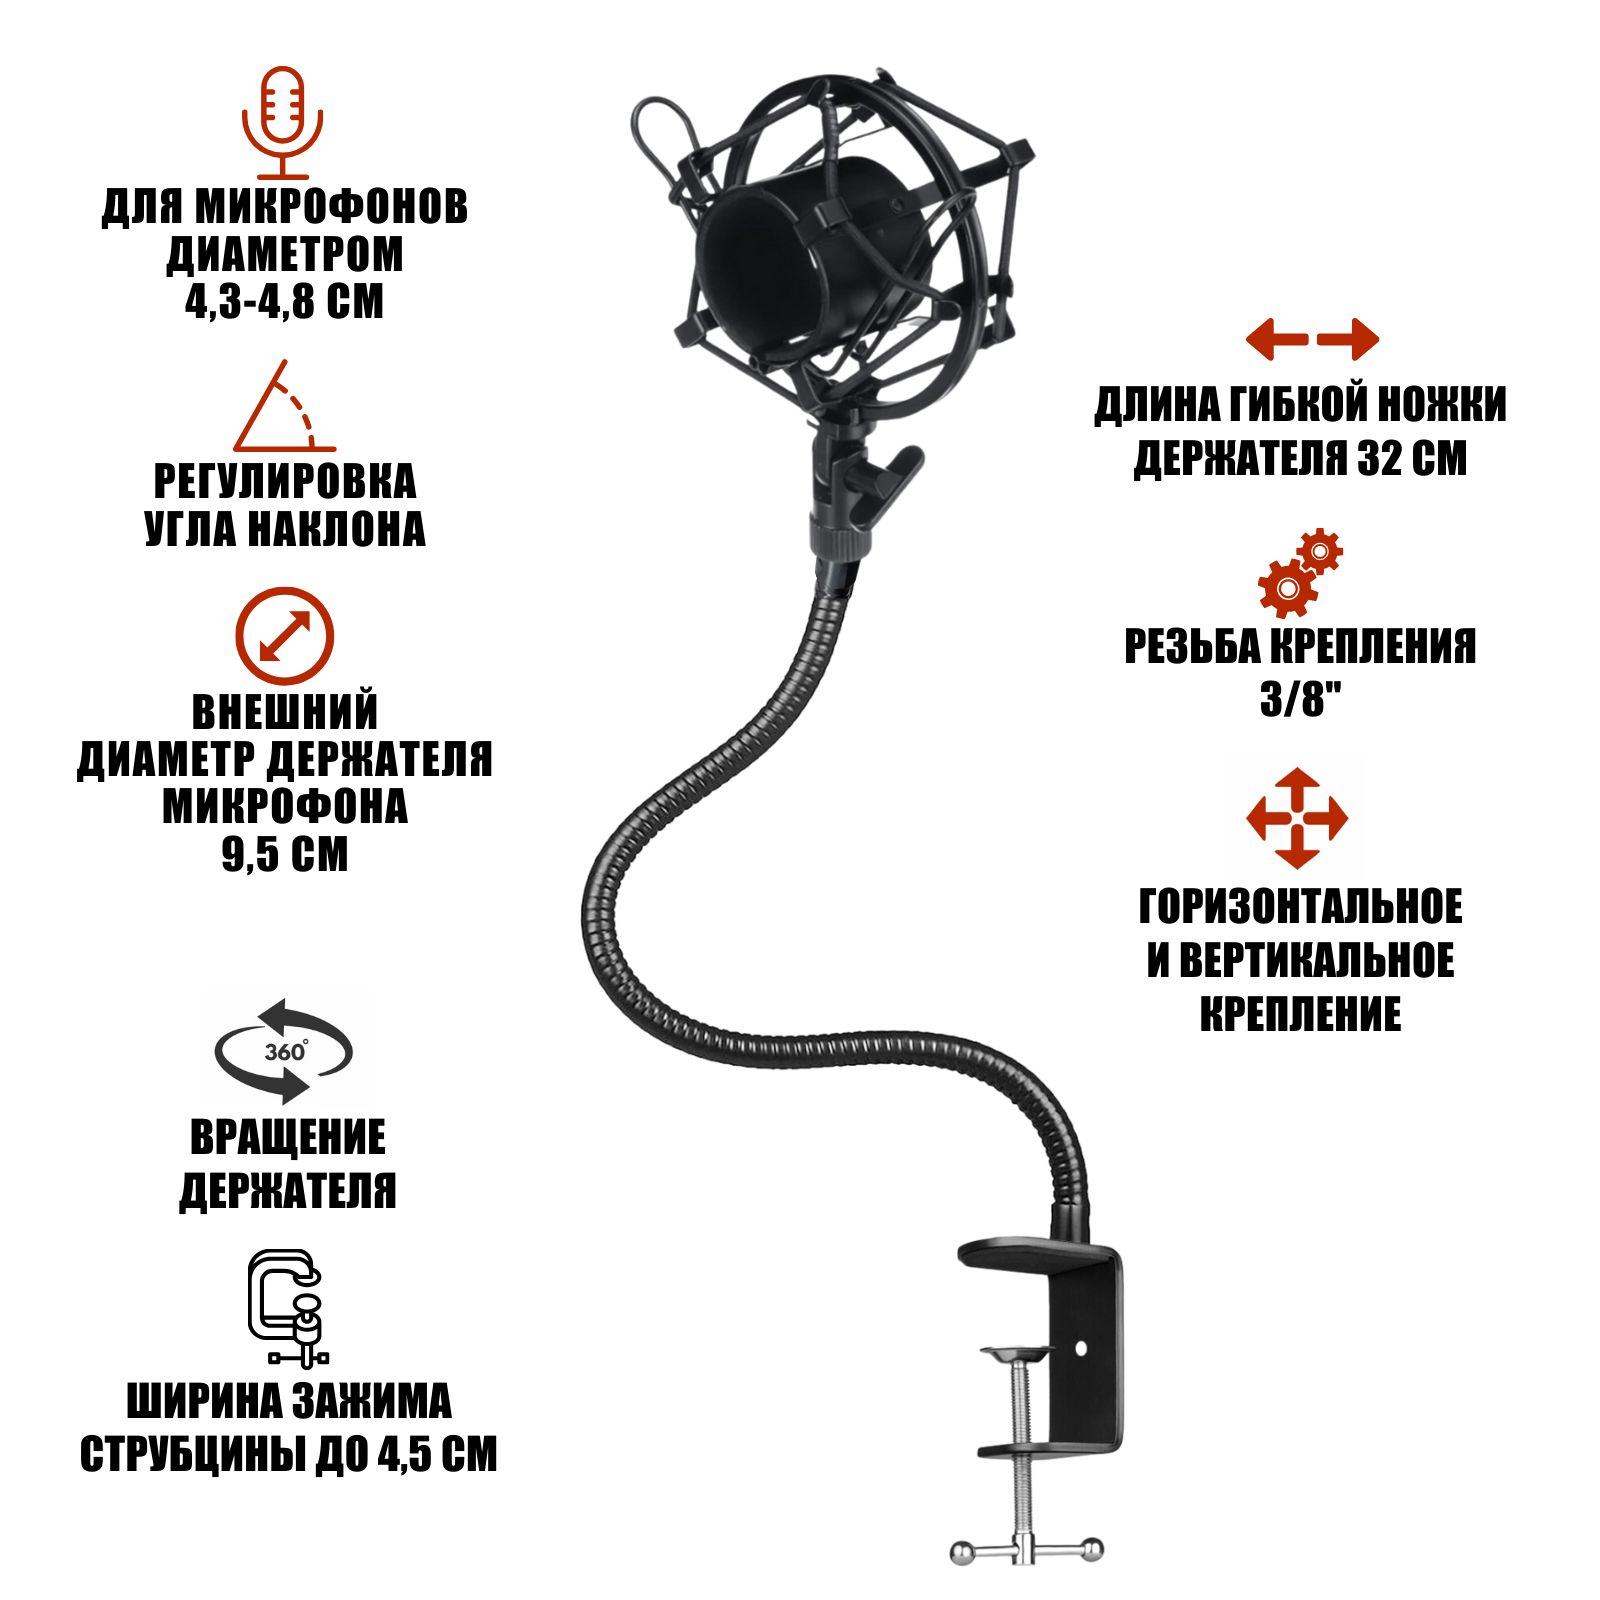 Гибкий держатель GDS-38-P2 для микрофона, паук P2 пластиковый противоударный со струбциной